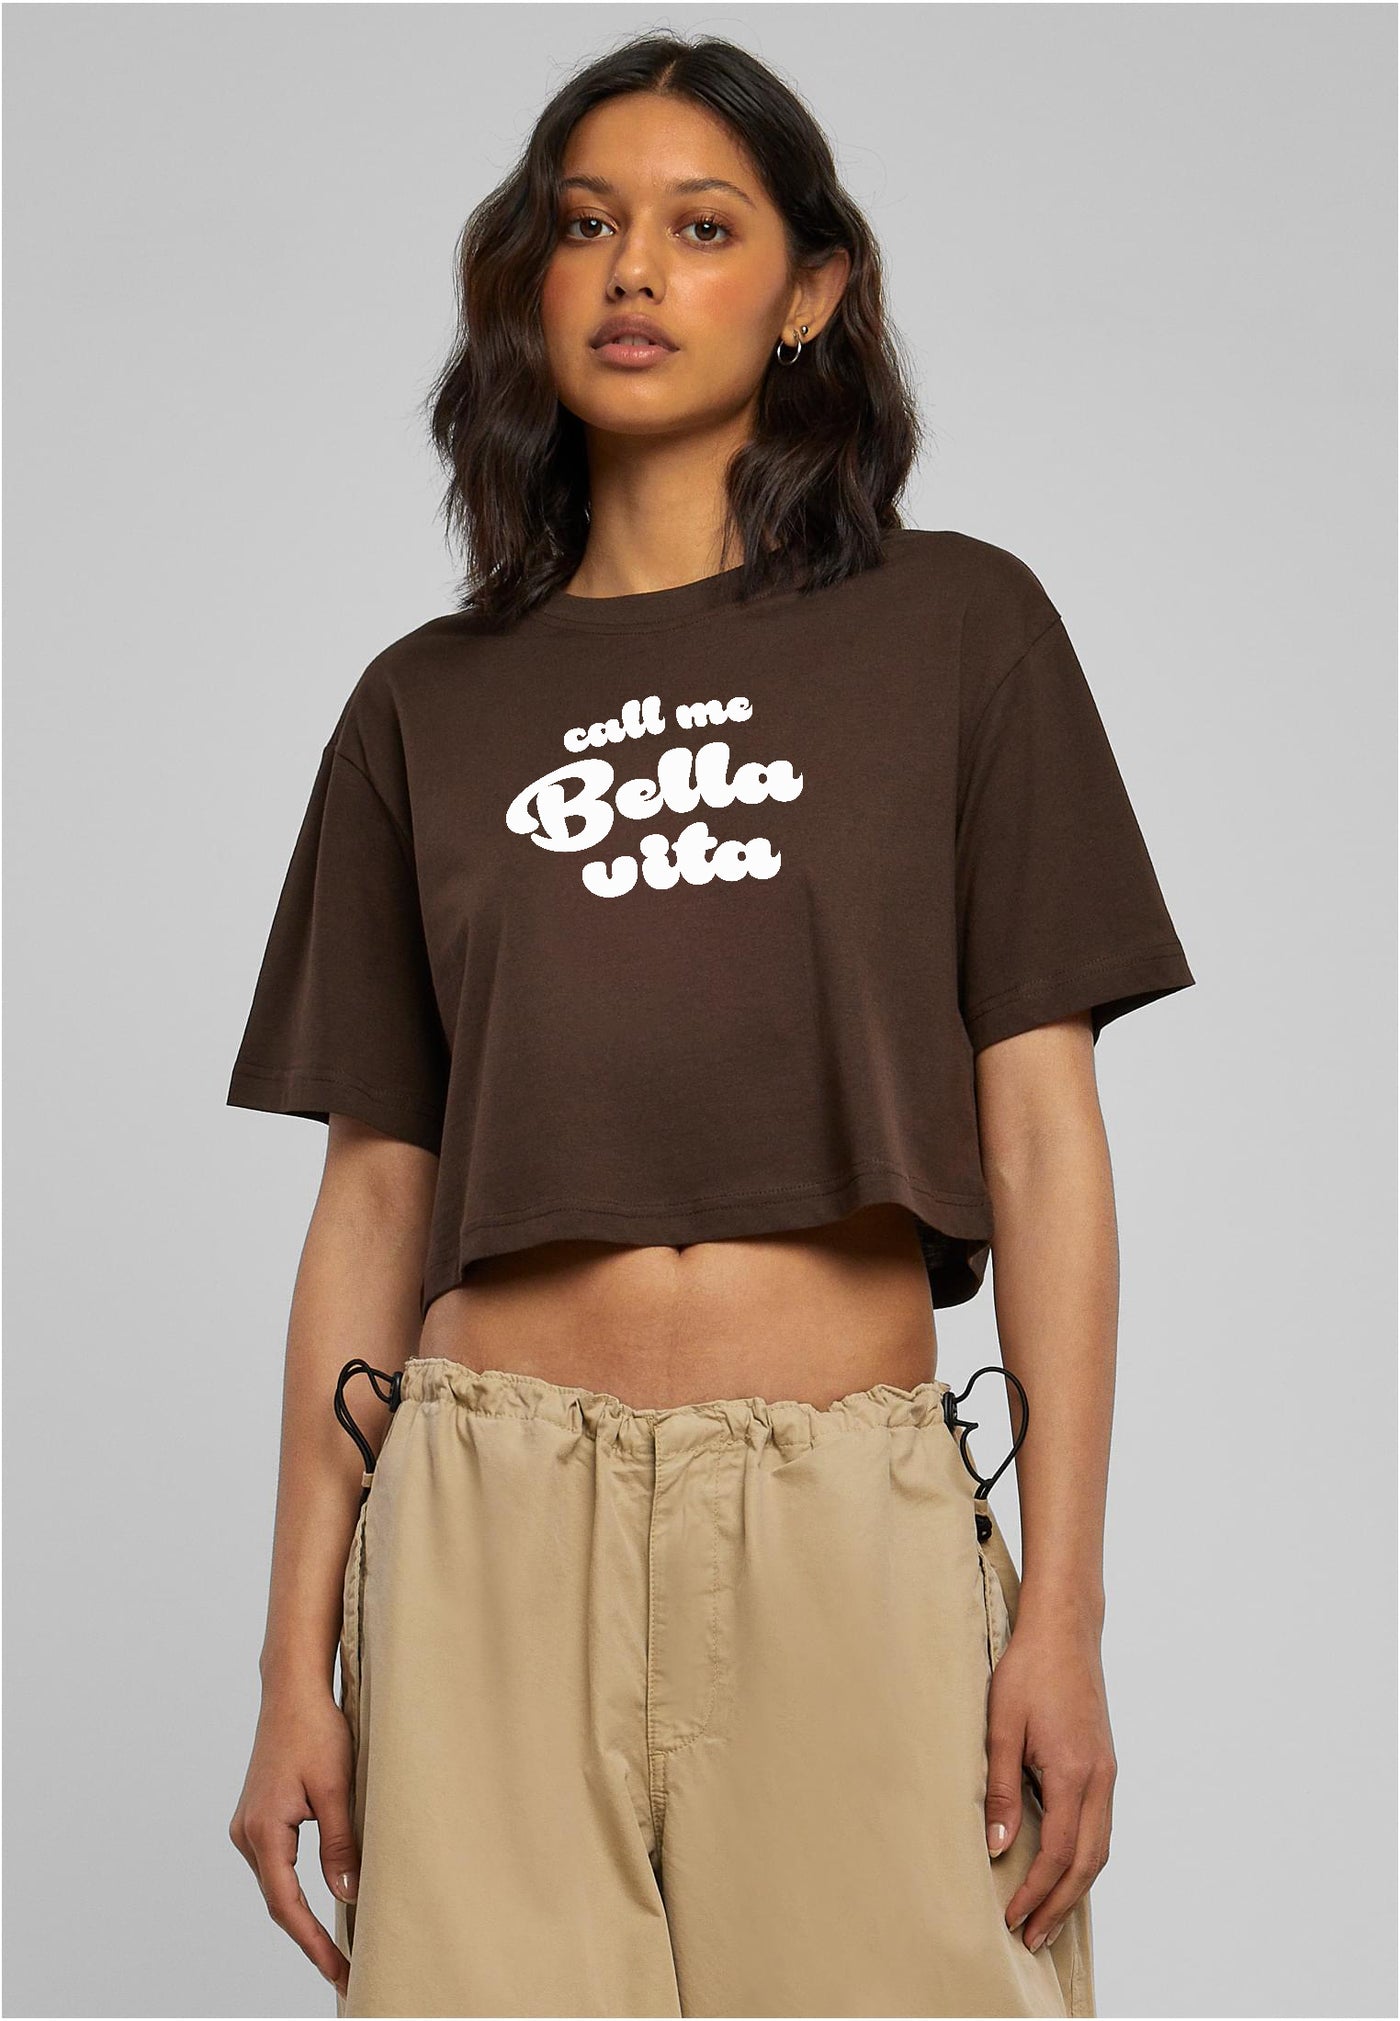 Crop T Shirt Call Me Bella Vita Brown